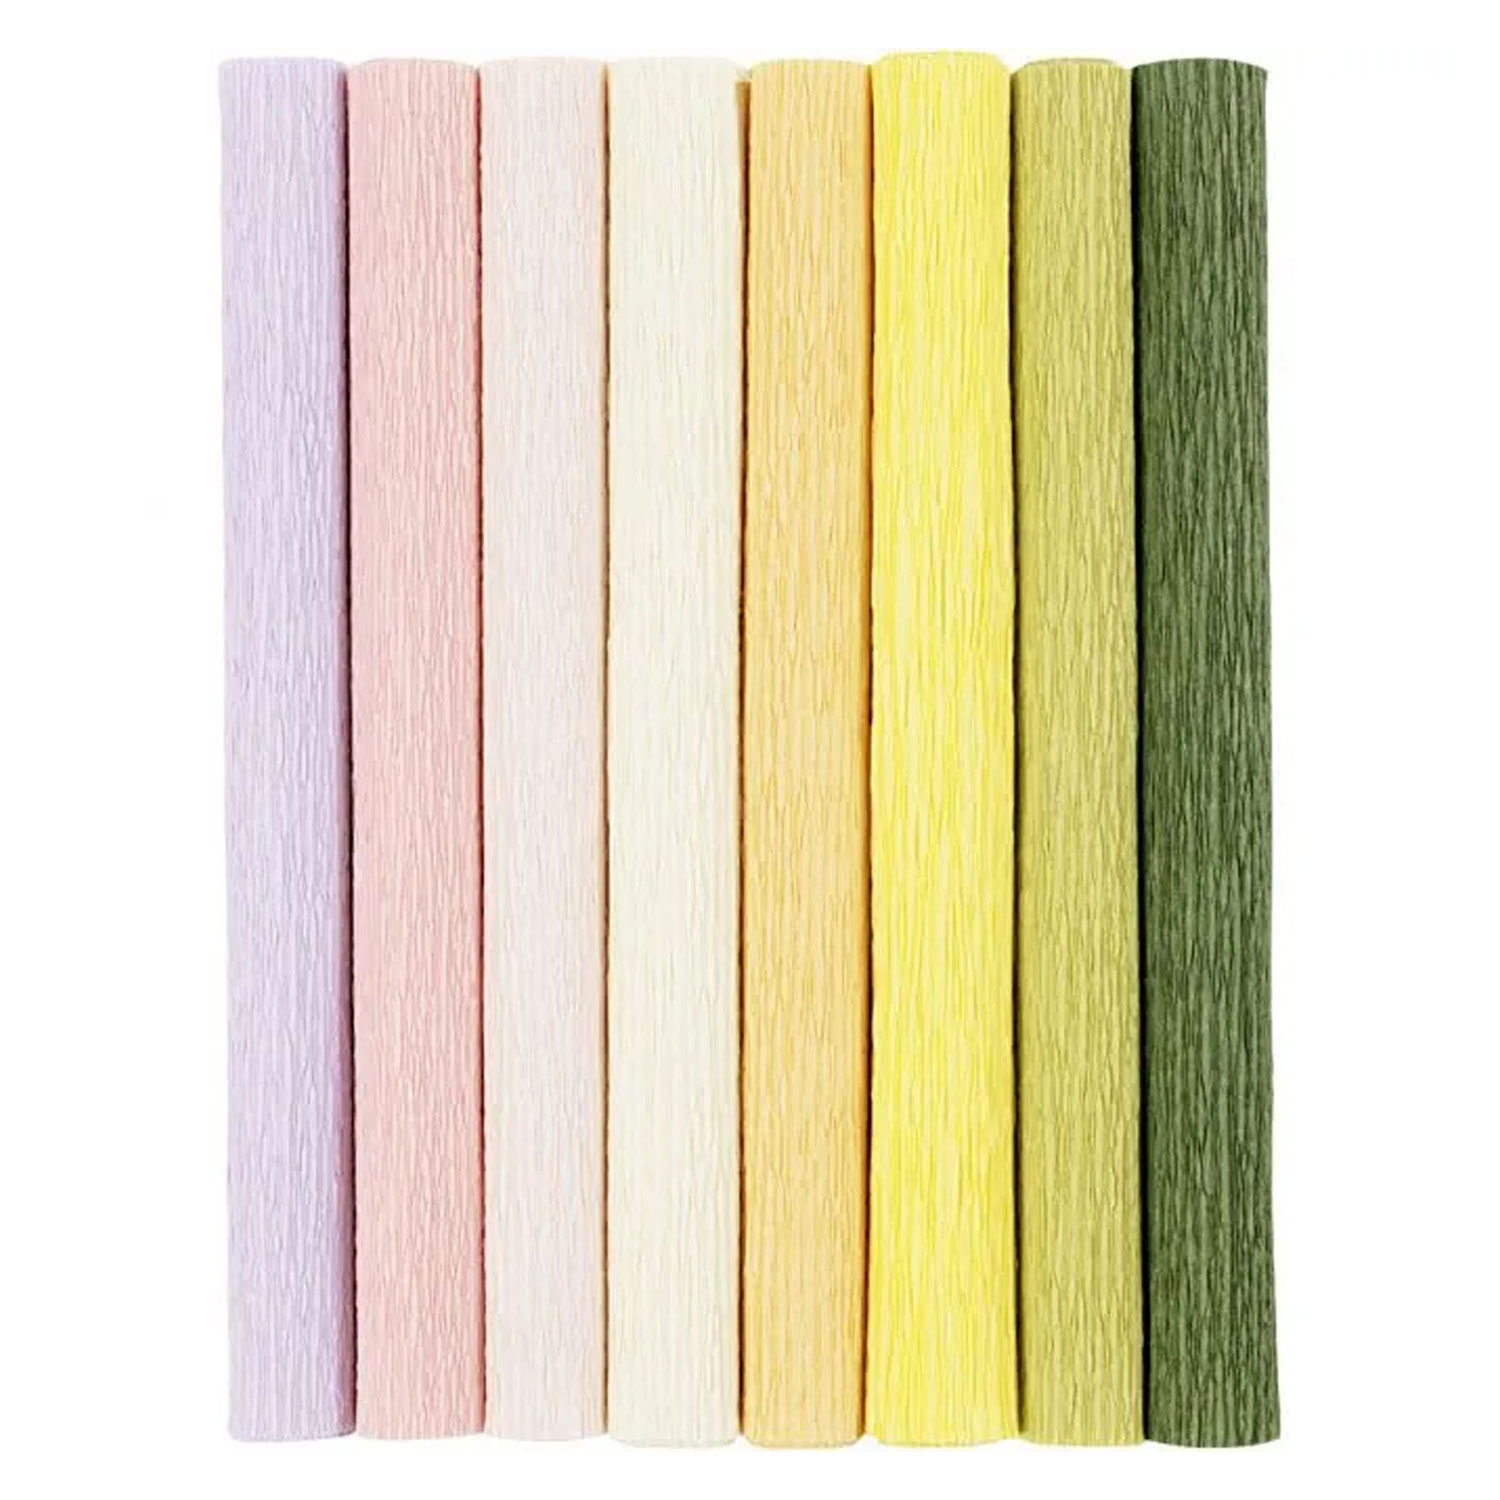 Krepppapier in Pastellfarben, 8 Blatt